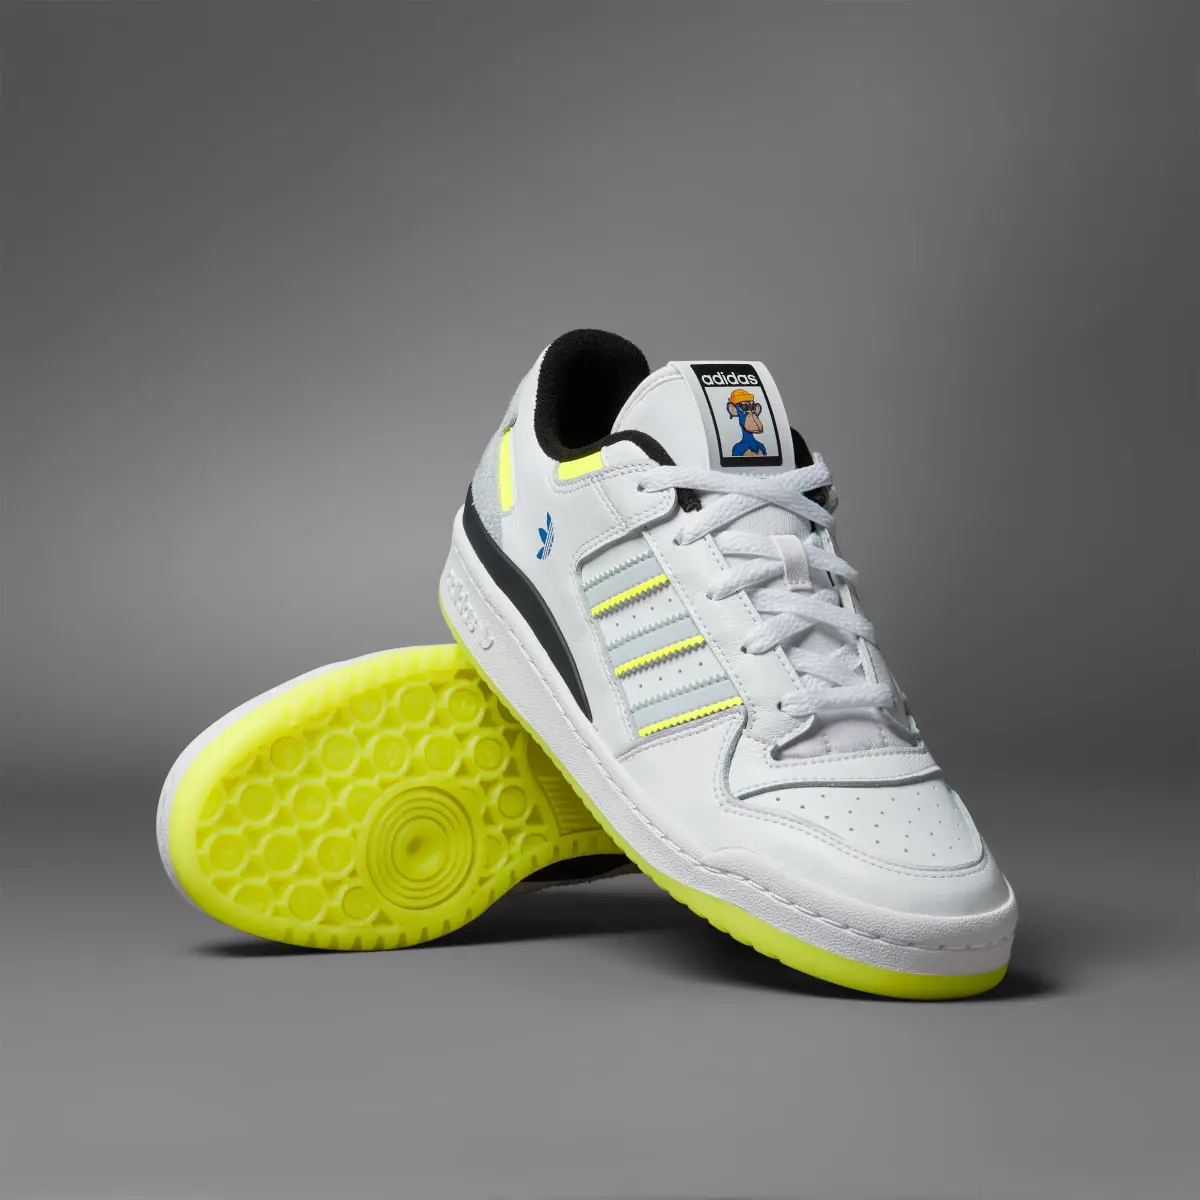 Adidas Scarpe Forum Low CL x Indigo Herz. 1